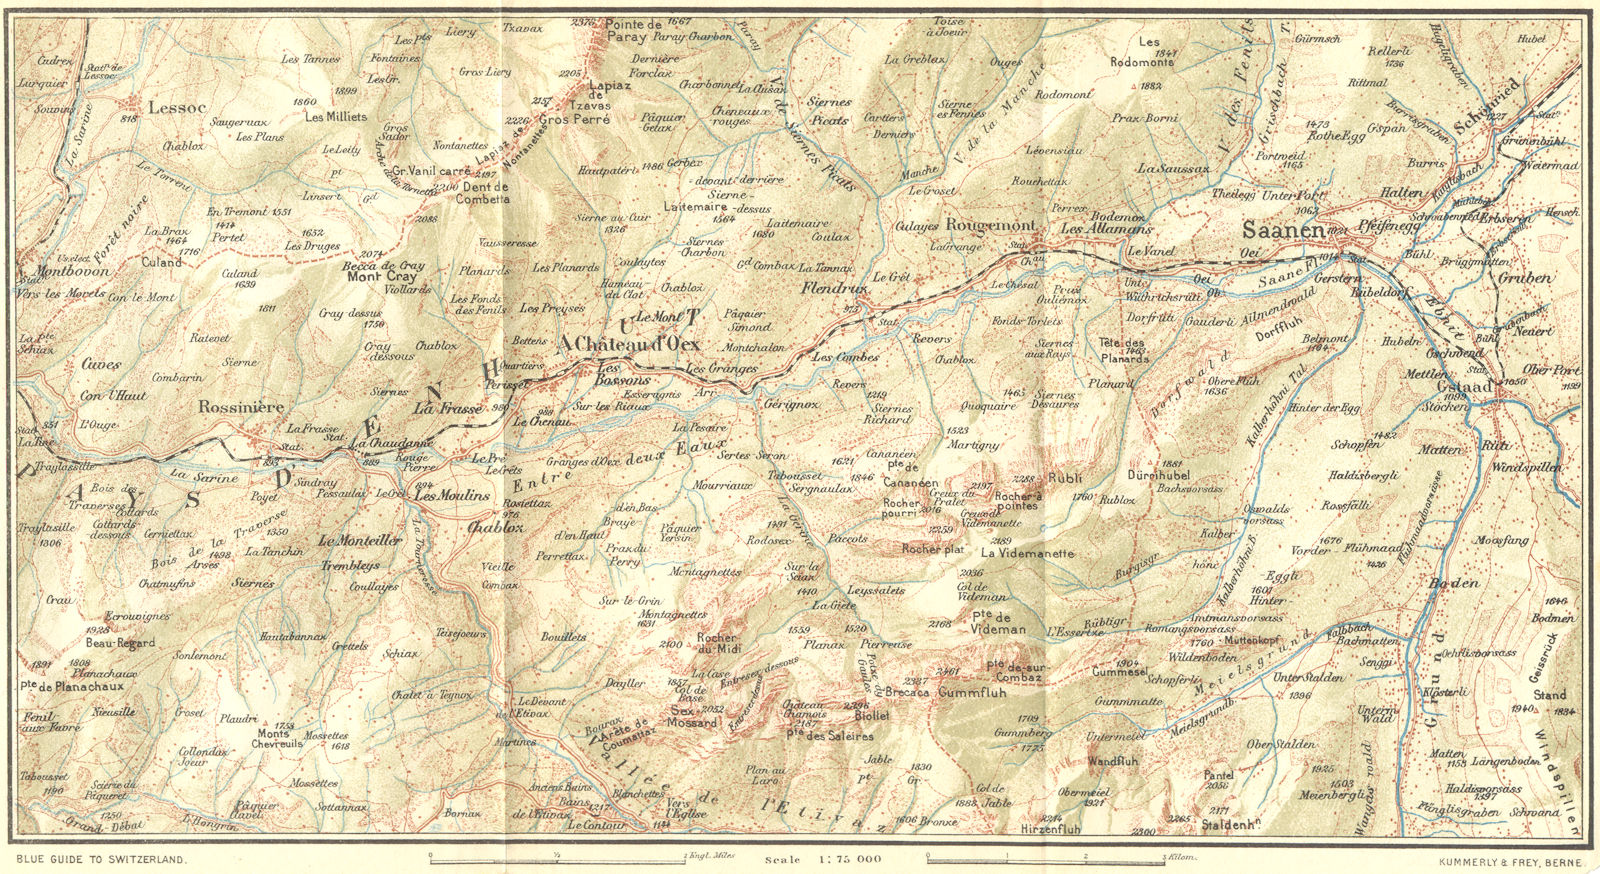 SWITZERLAND. Chateau d'cex-Saanen 1923 old antique vintage map plan chart